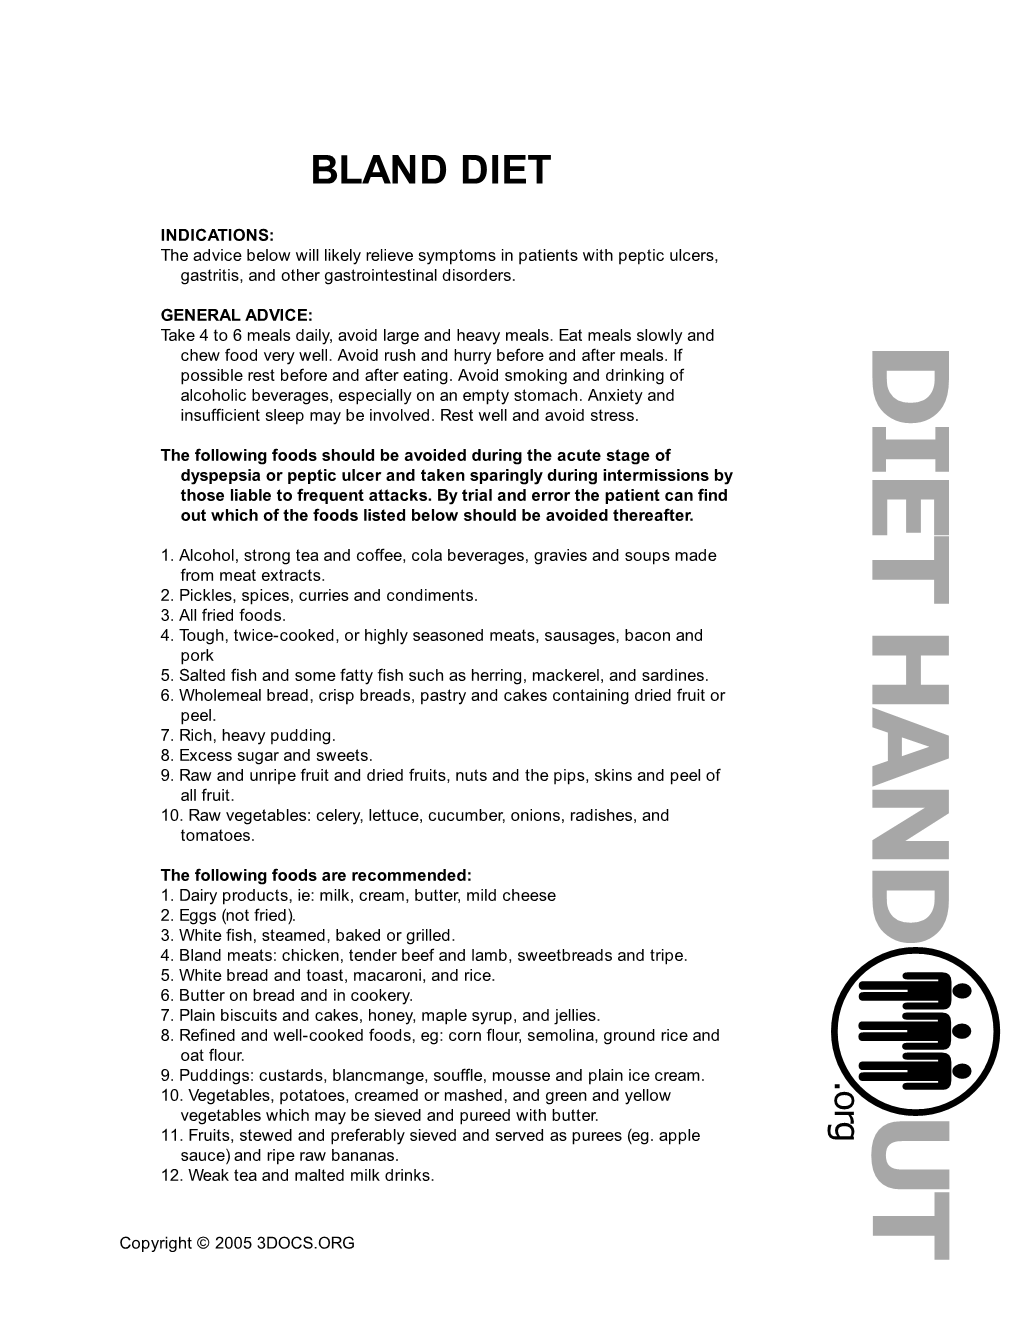 Bland-Diet.Pdf